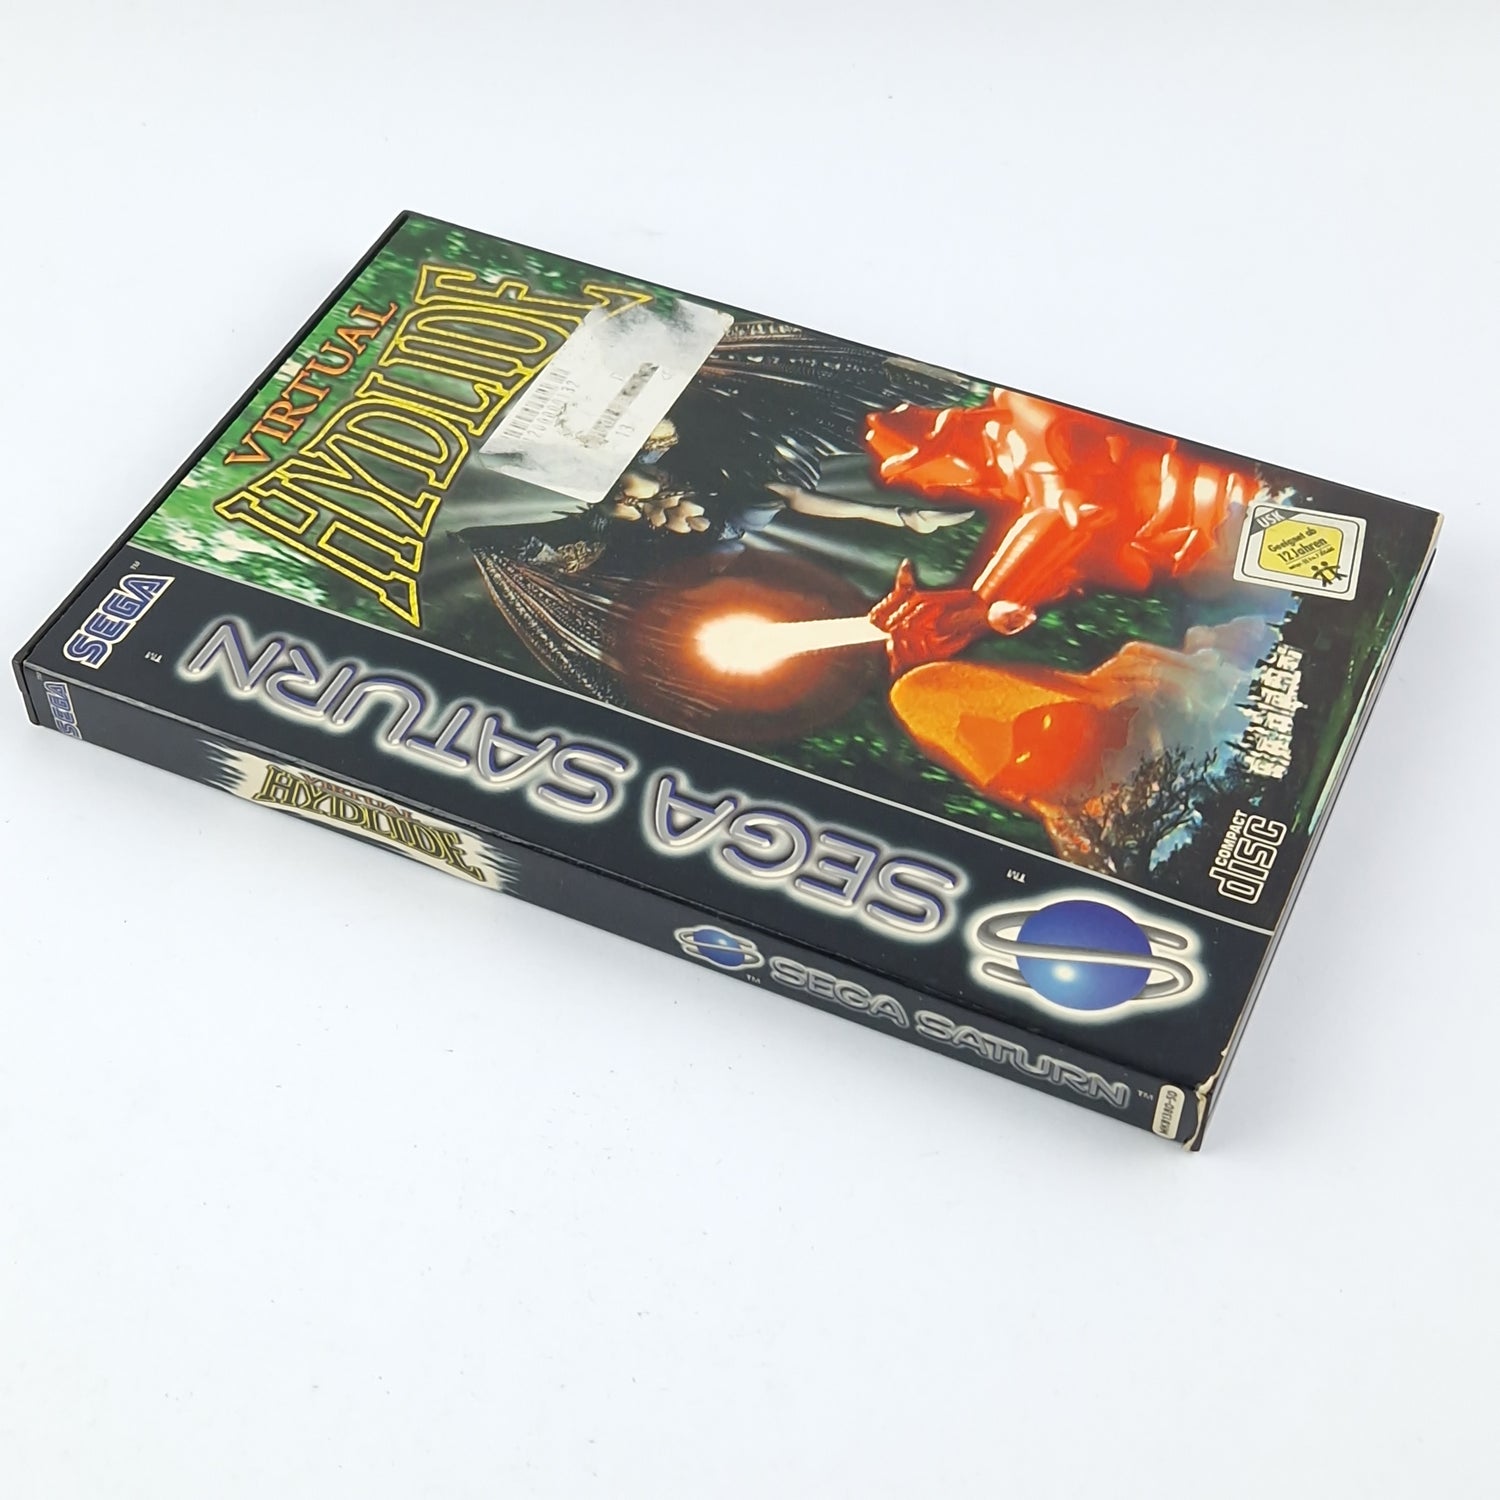 Sega Saturn Spiel : Virtual Hydlide - CD Anleitung OVP / PAL Disk